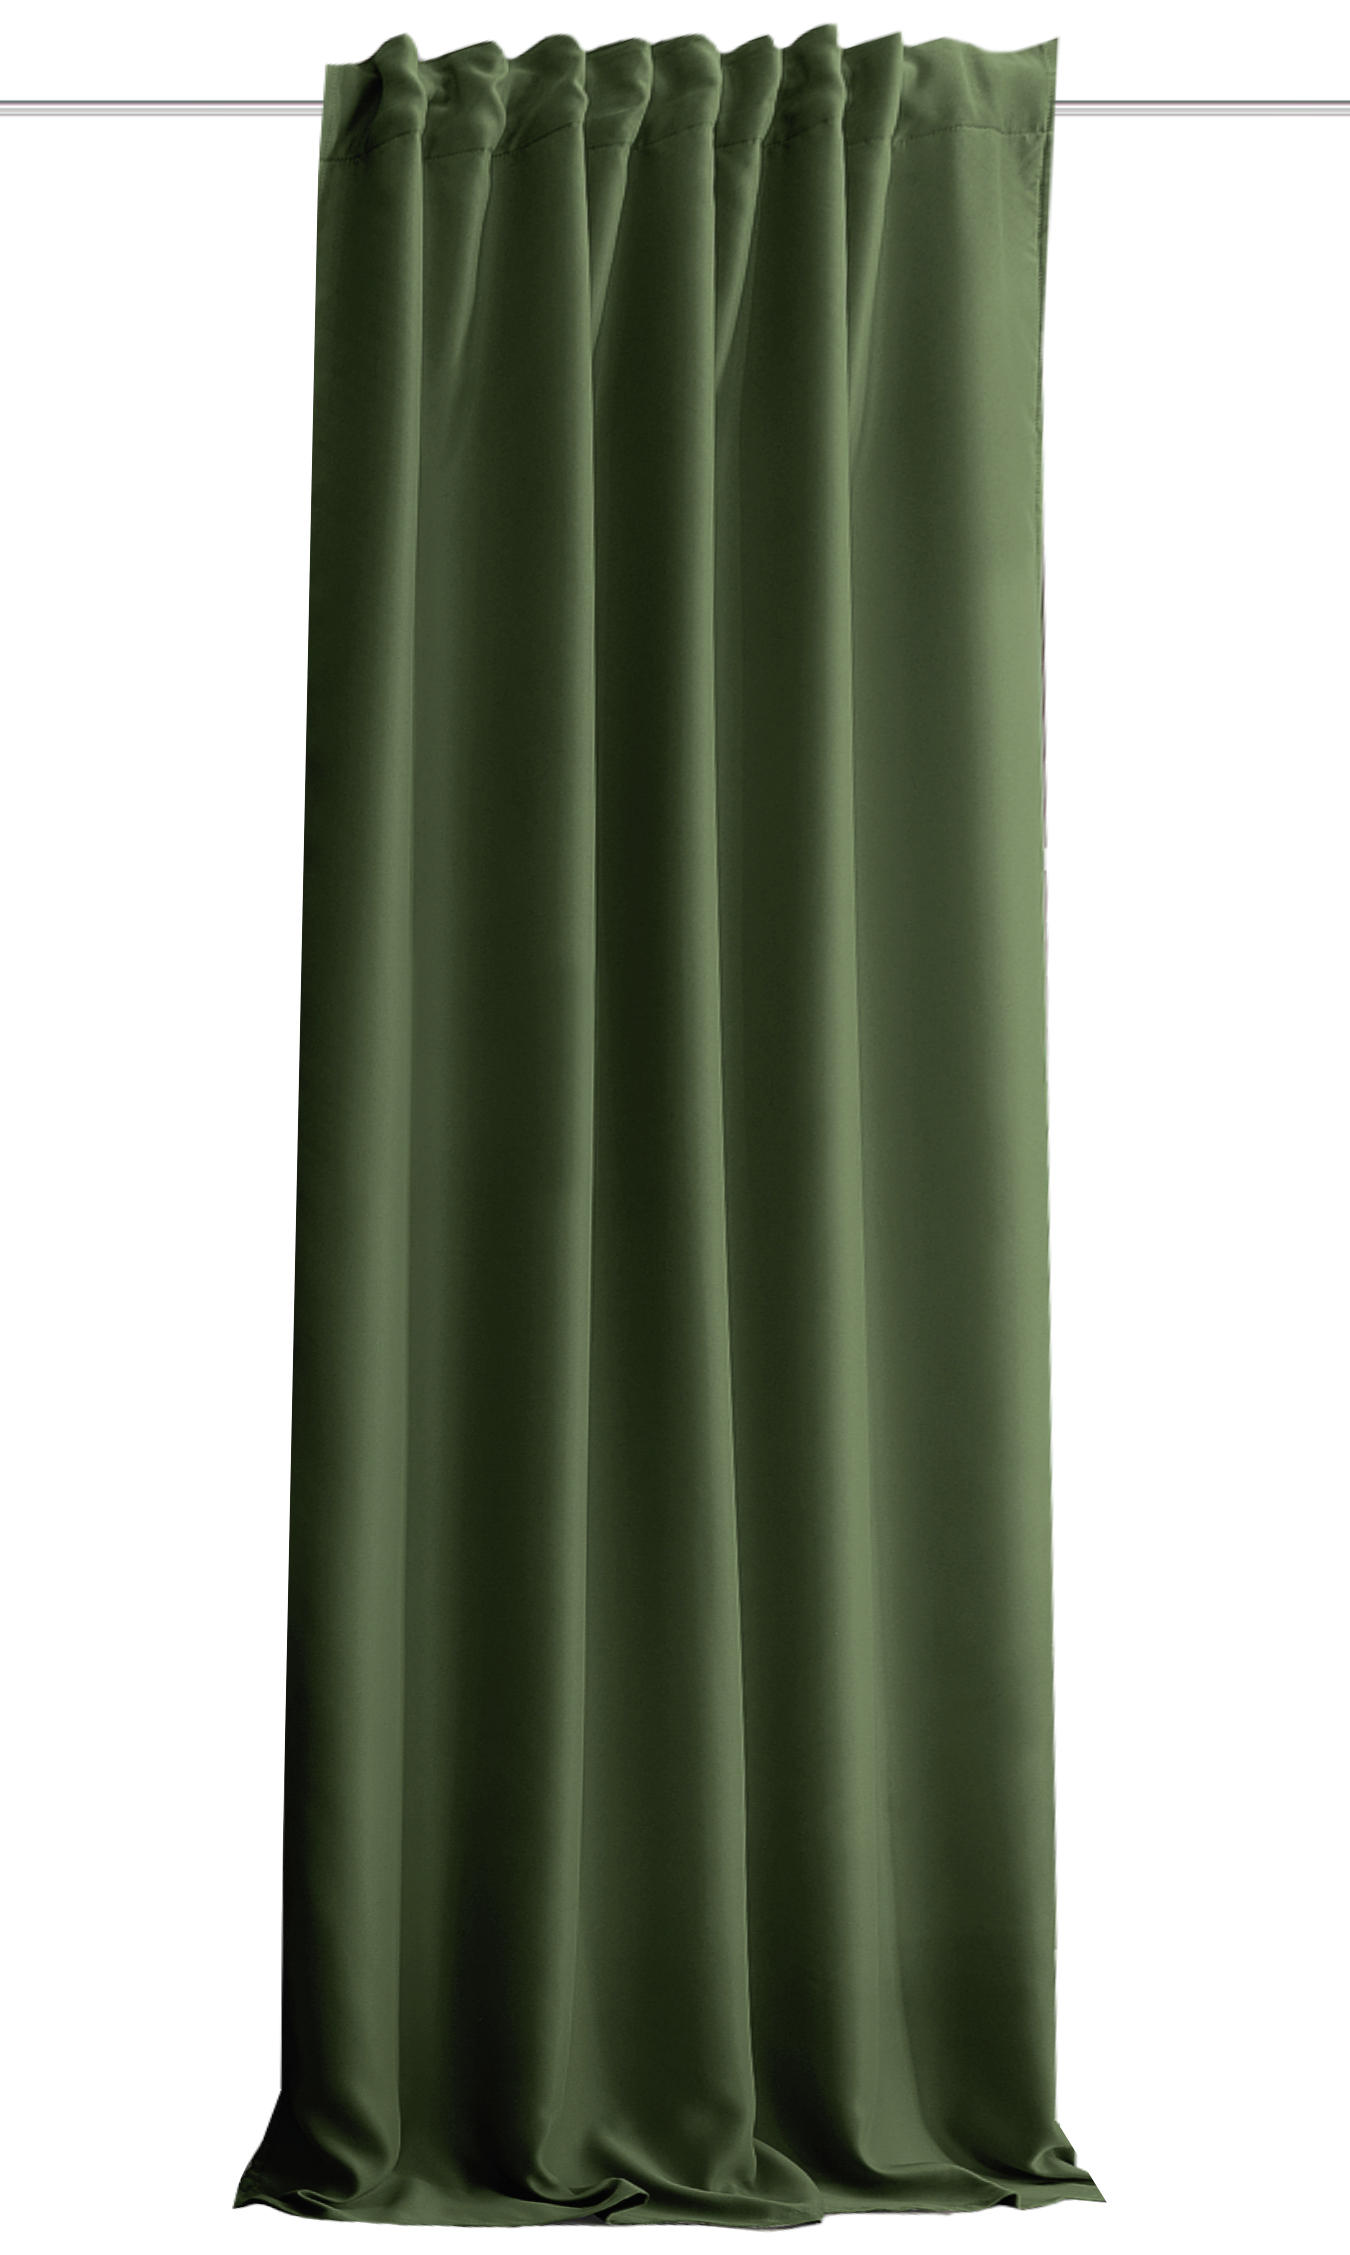 LÄRMSCHUTZVORHANG  Verdunkelung  135/245 cm   - Olivgrün, KONVENTIONELL, Textil (135/245cm)